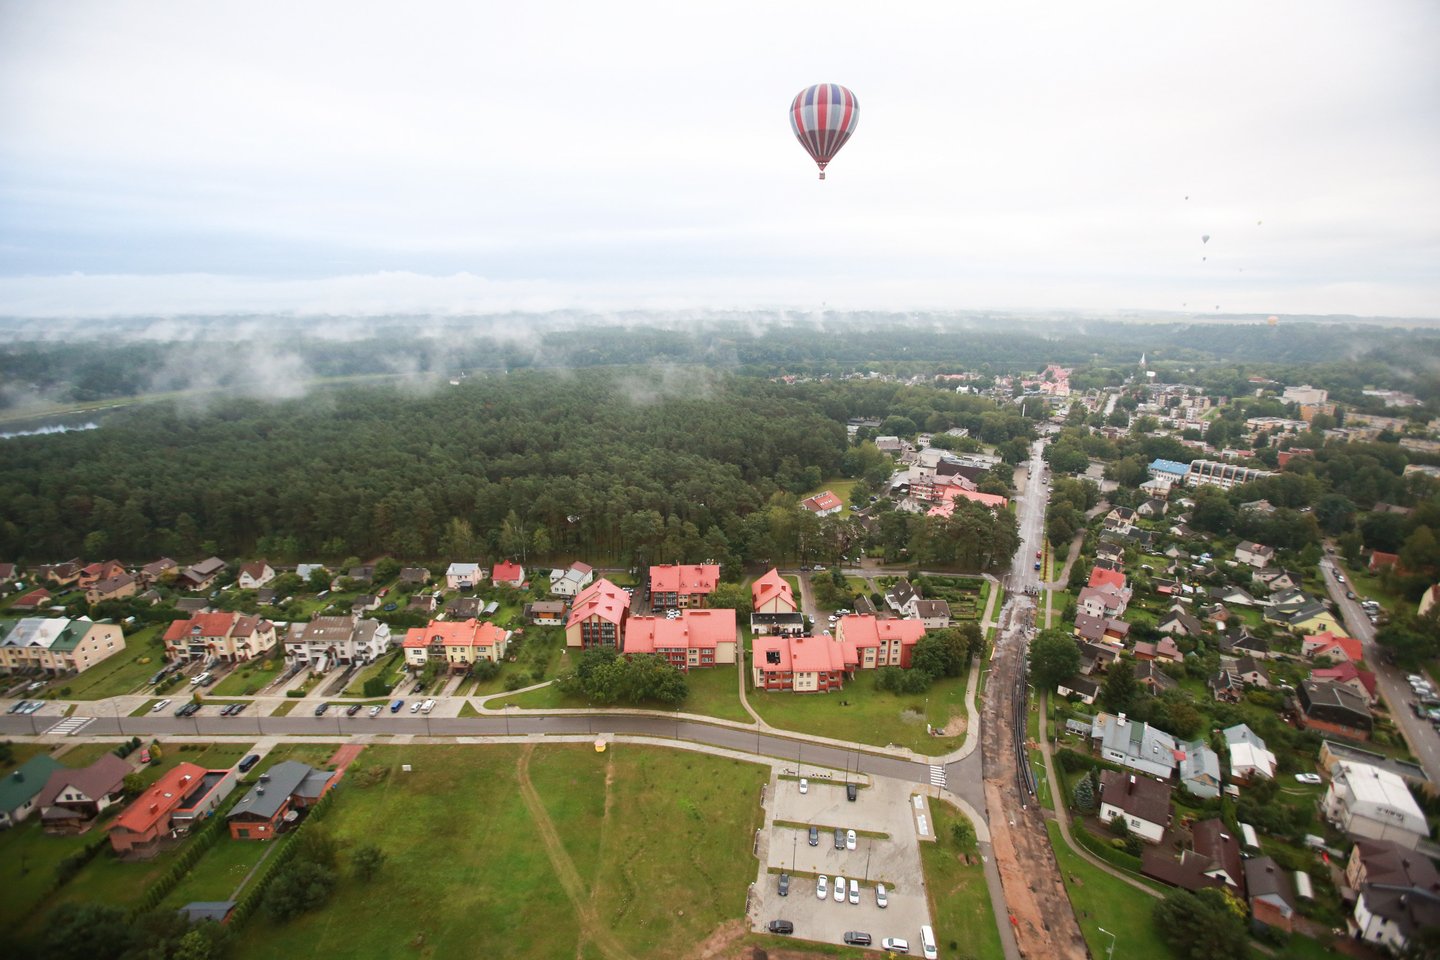 Skrendant oro balionu atveria iš aukštybių atsiveria Birštonas ir jo apylinkės.<br> G.Bitvinsko nuotr.